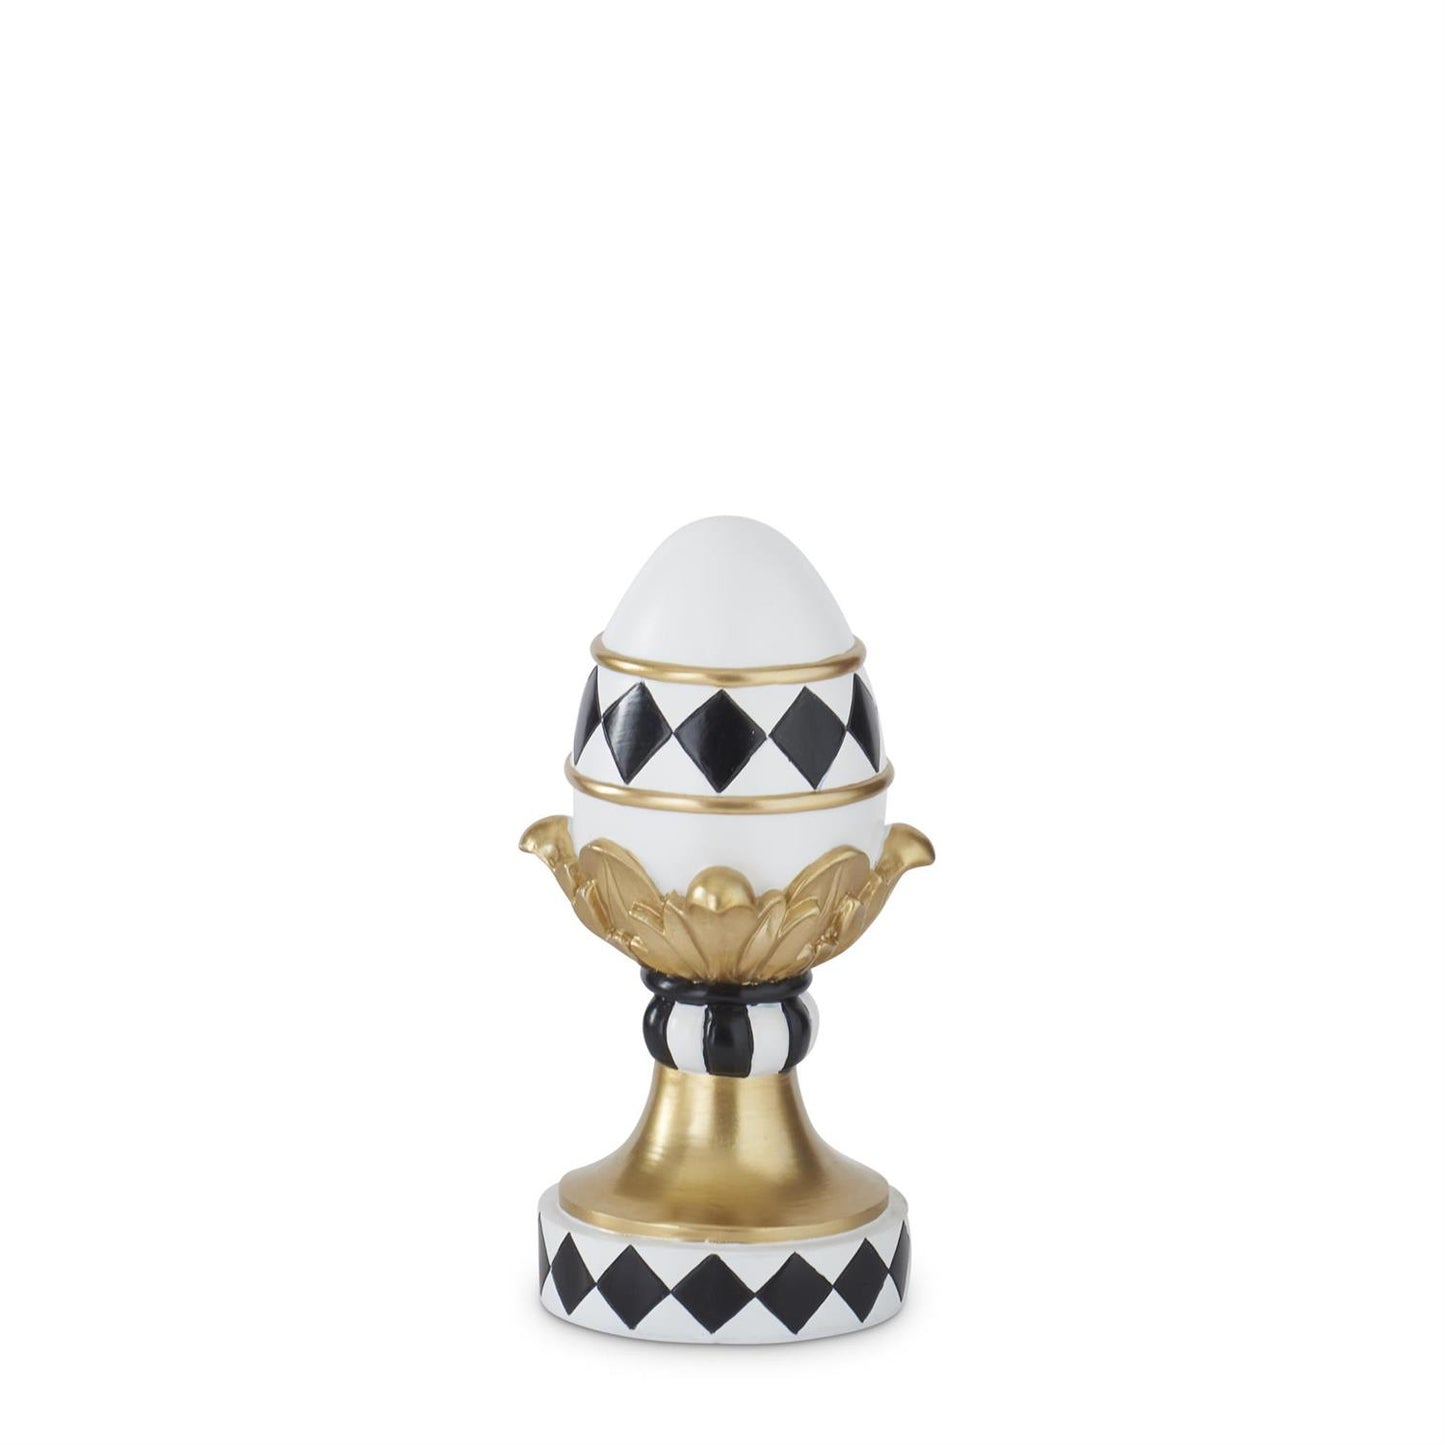 9" White Gold & Black Easter Egg on Pedestal